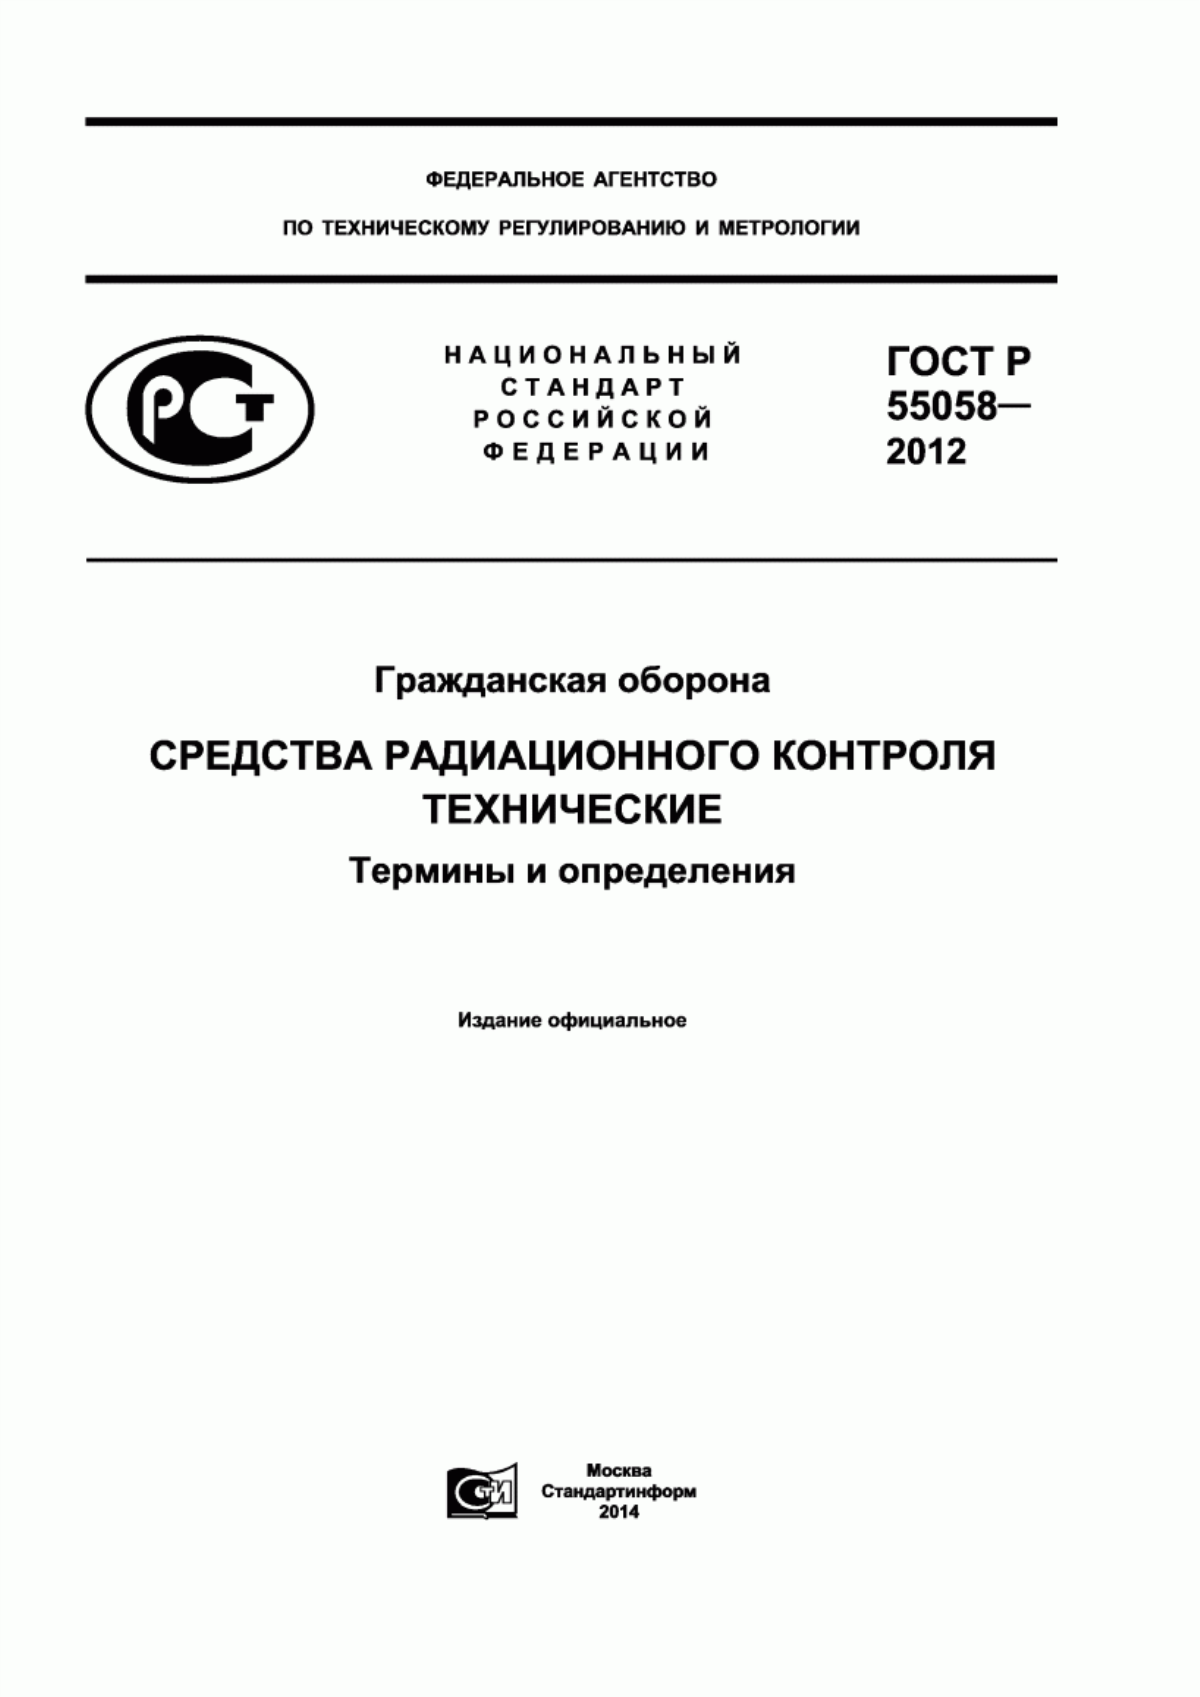 ГОСТ Р 55058-2012 Гражданская оборона. Средства радиационного контроля технические. Термины и определения